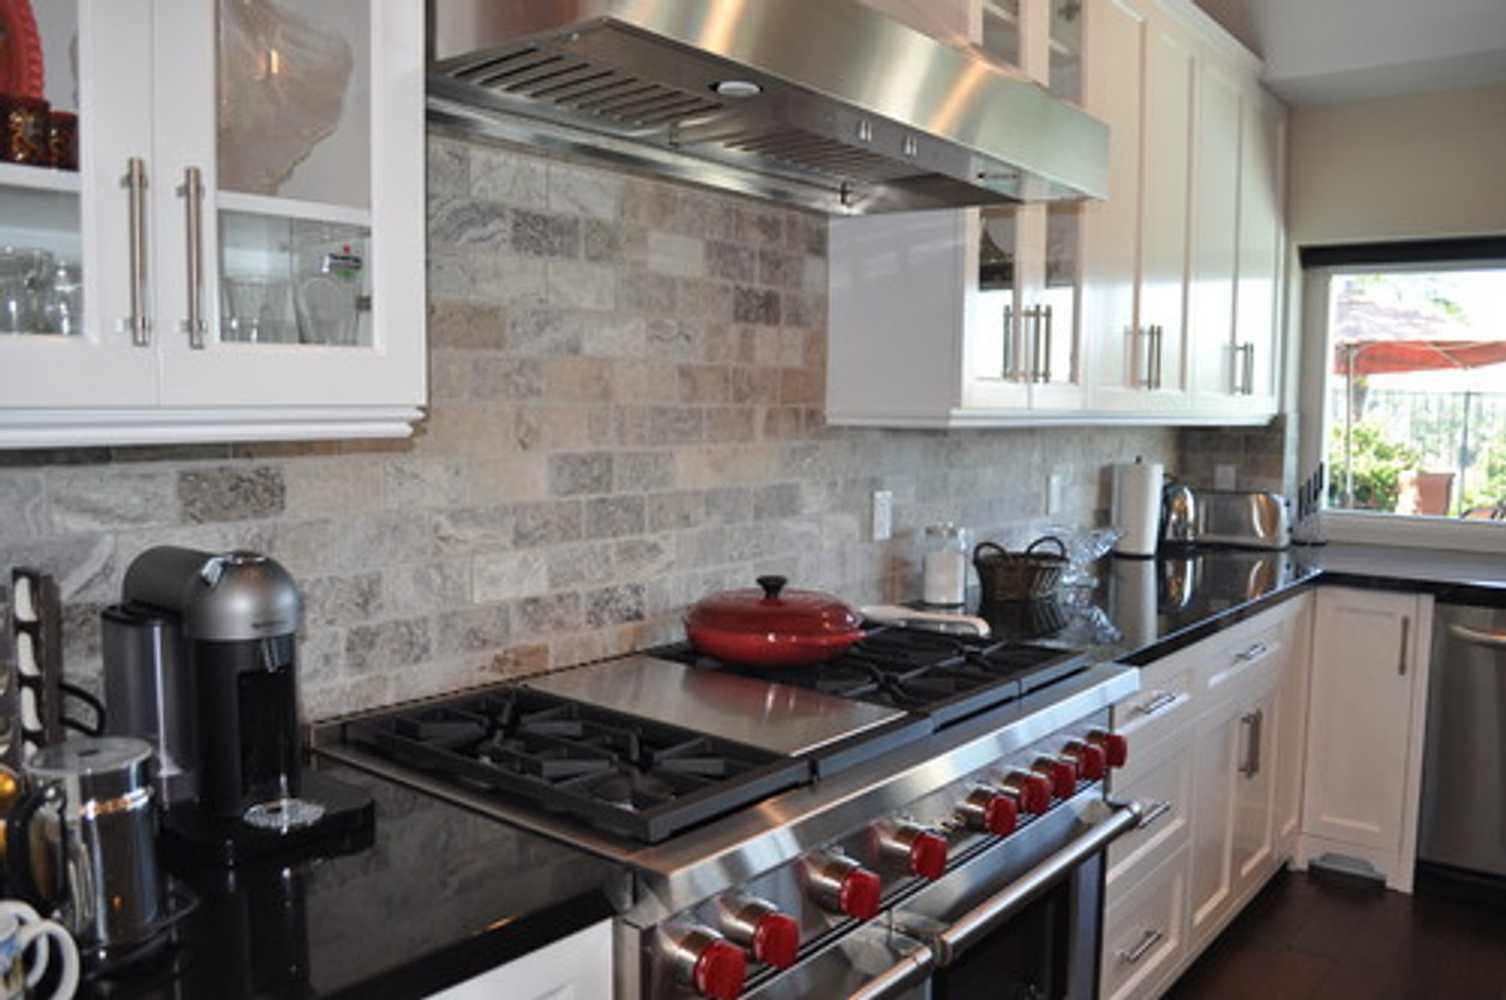 Anaheim Hills - Structural work & Custom kitchen remodel